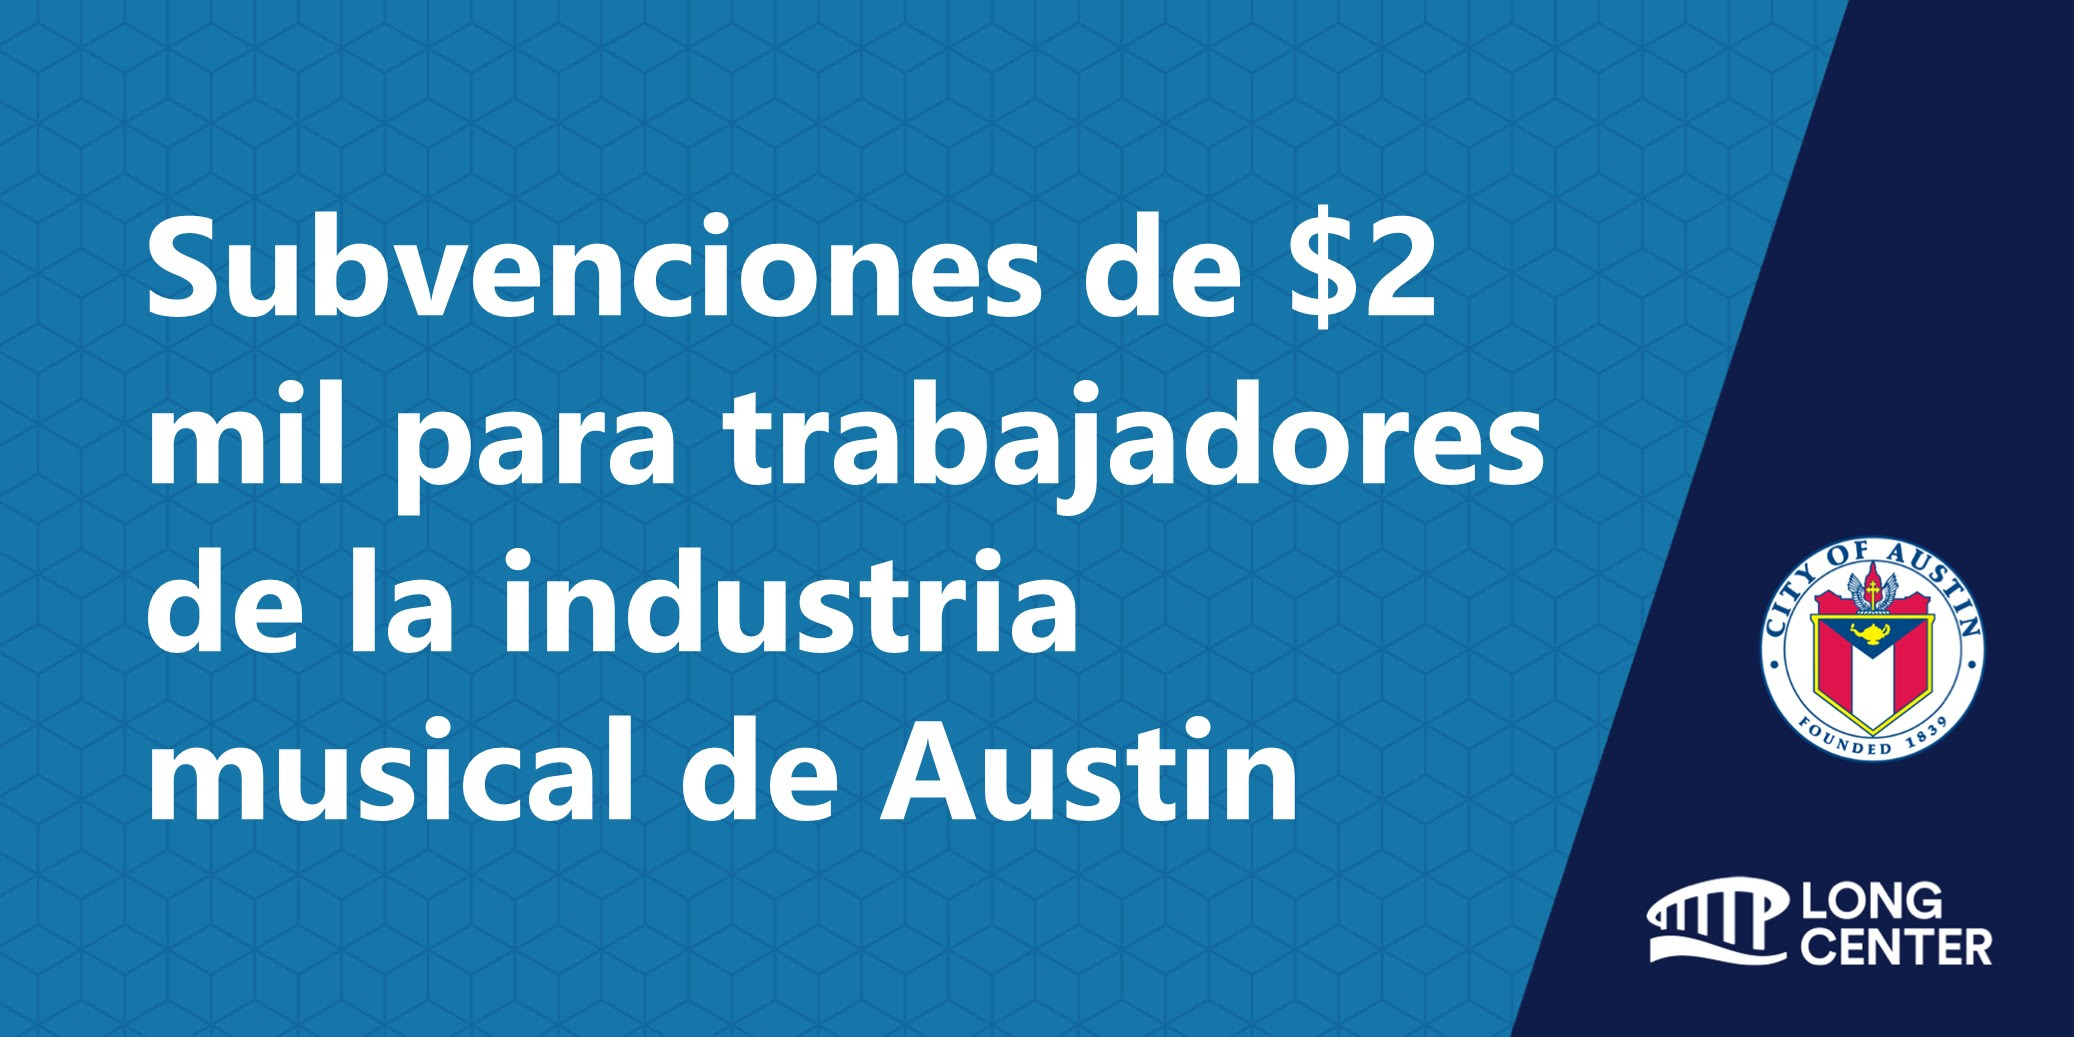 Subvenciones de $2 mil para trabajadores de la industria musical de Austin